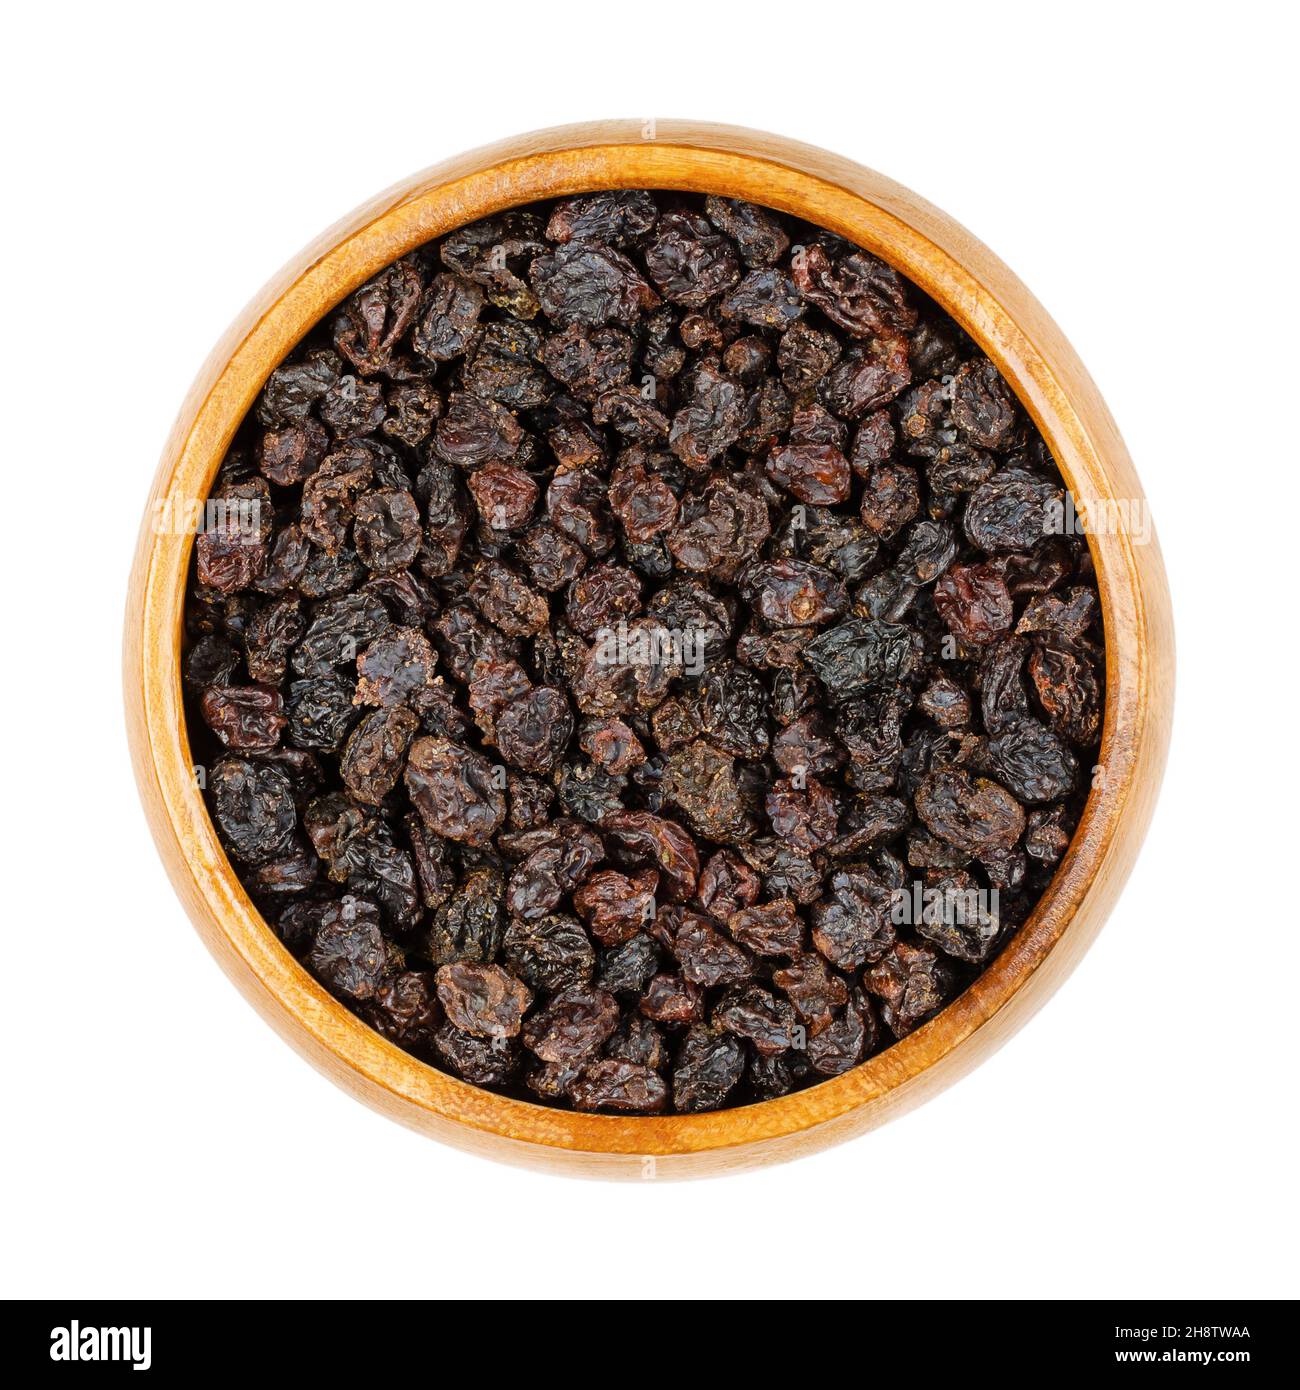 Zante Johannisbeeren, in einer Holzschale. Kleine Rosinen, auch als Corinth Rosinen oder einfach nur Johannisbeeren bekannt. Getrocknete Früchte der kleinen, süßen, kernlosen Trauben. Stockfoto